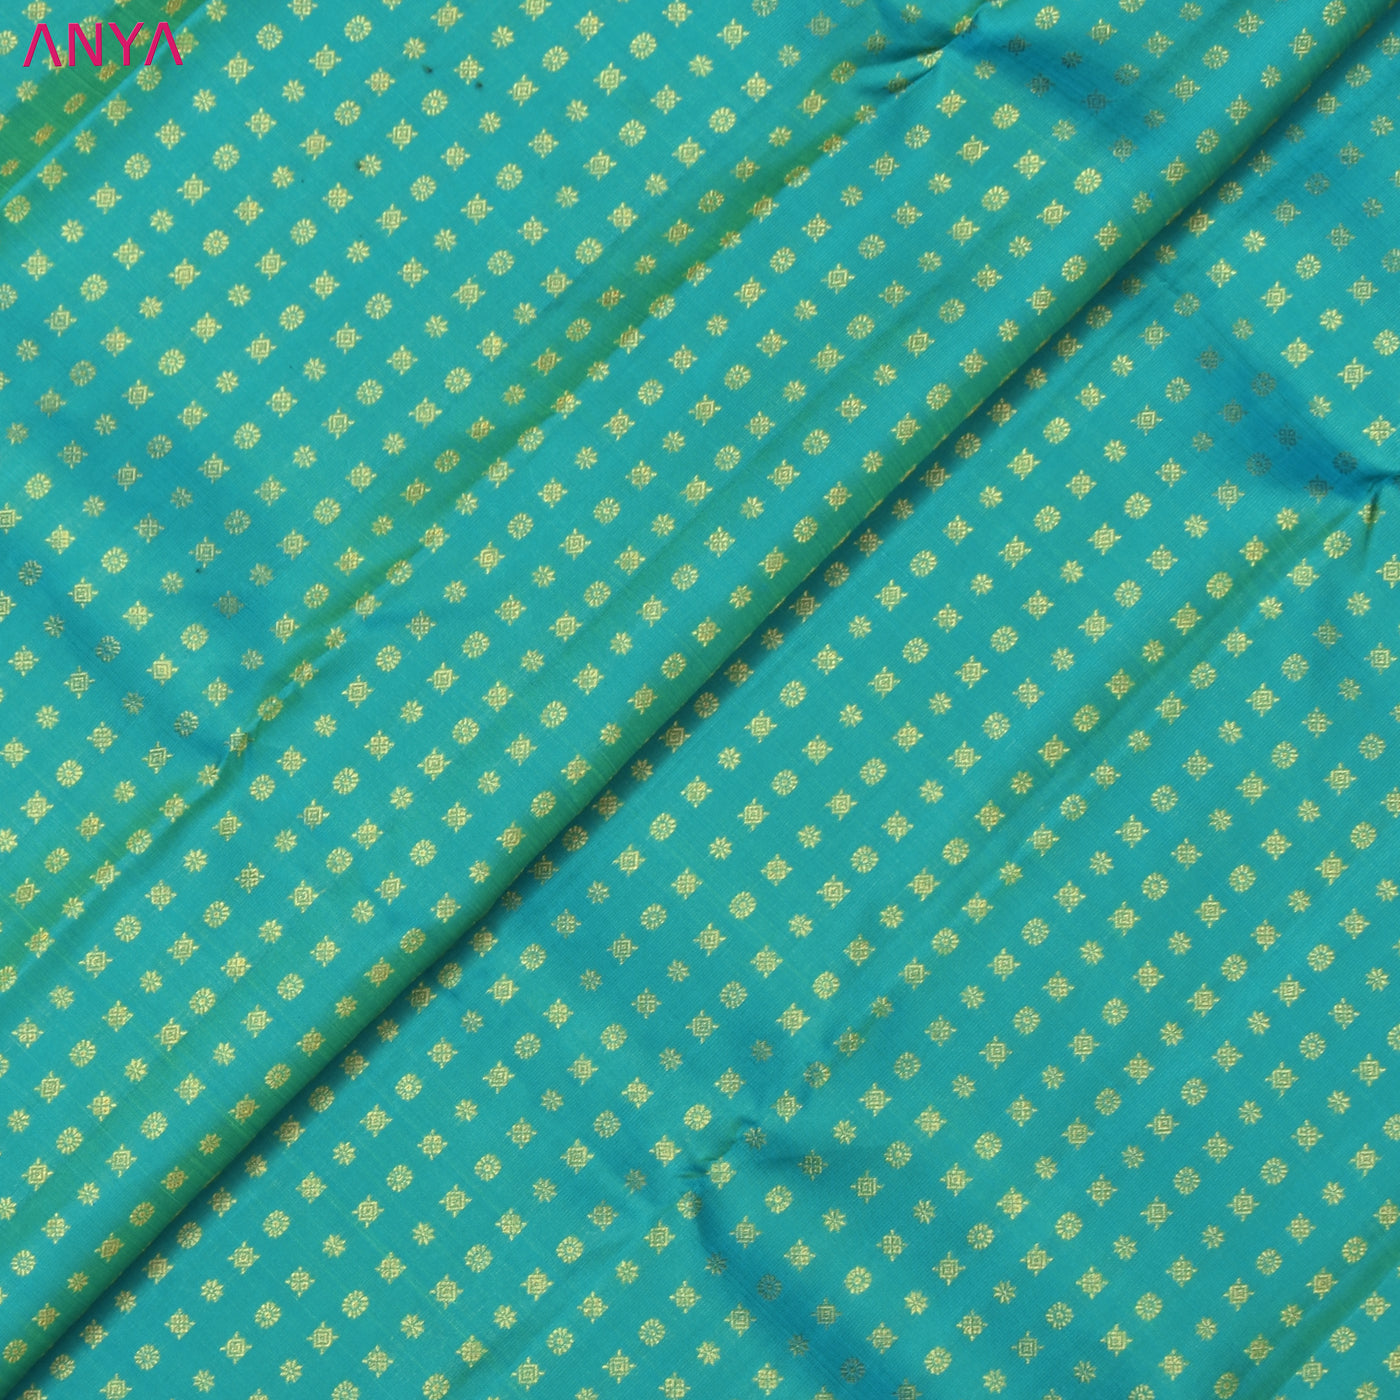 Rexona Kanchi Silk Fabric with Star Butta Design